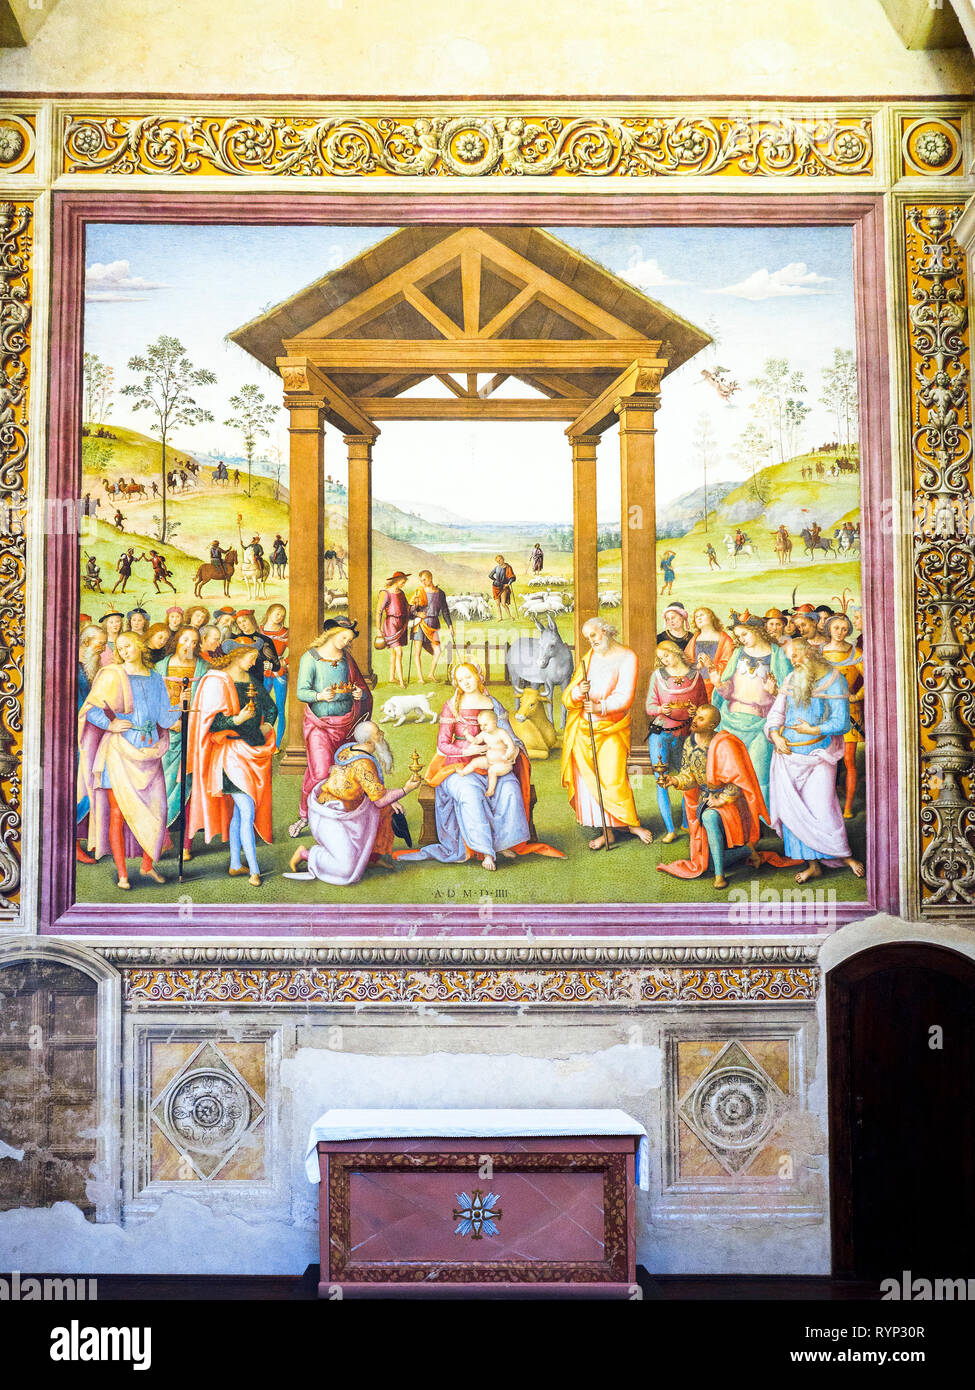 Anbetung der Heiligen Drei Könige (adorazione dei Magi) von Pietro Vannucci, bekannt als "Il Perugino" (1450 - 1523) Im Oratorium in Santa Maria dei Bianchi - Città della Pieve, Imbria, Italien Stockfoto